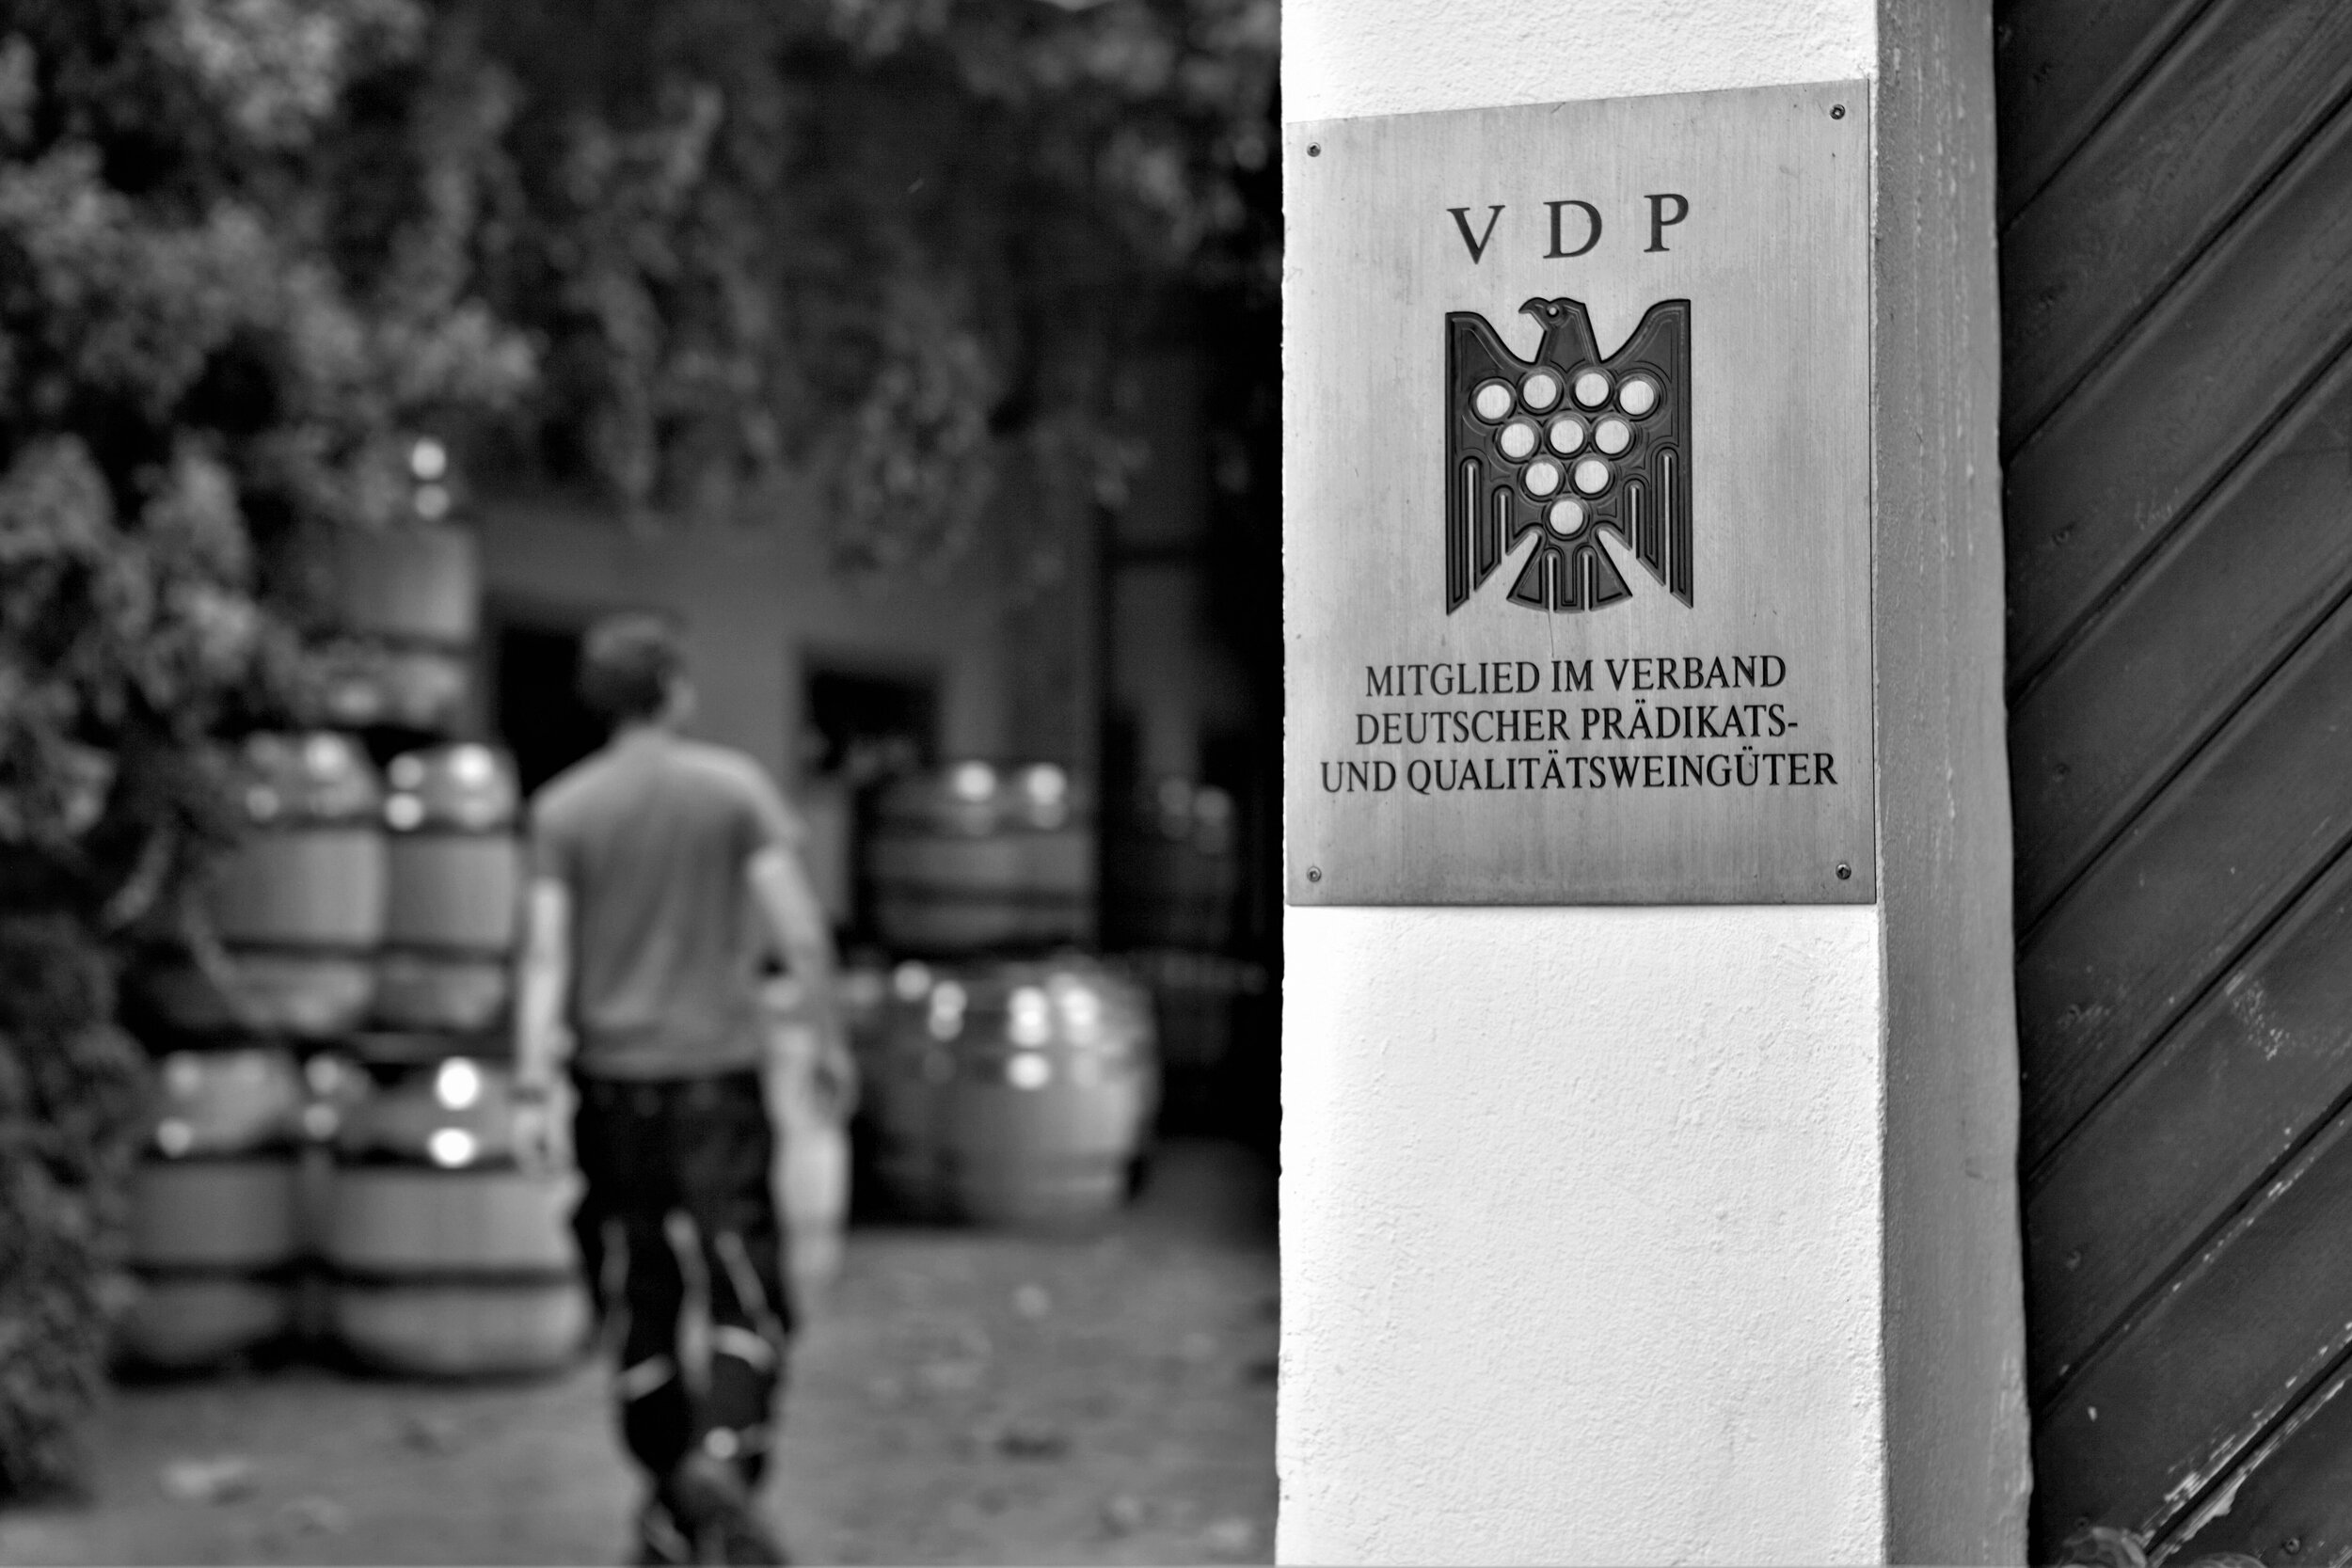  Das Weingut Friedrich Becker gehört zum VDP, dem Verein Deutscher Prädikatsweingüter. 